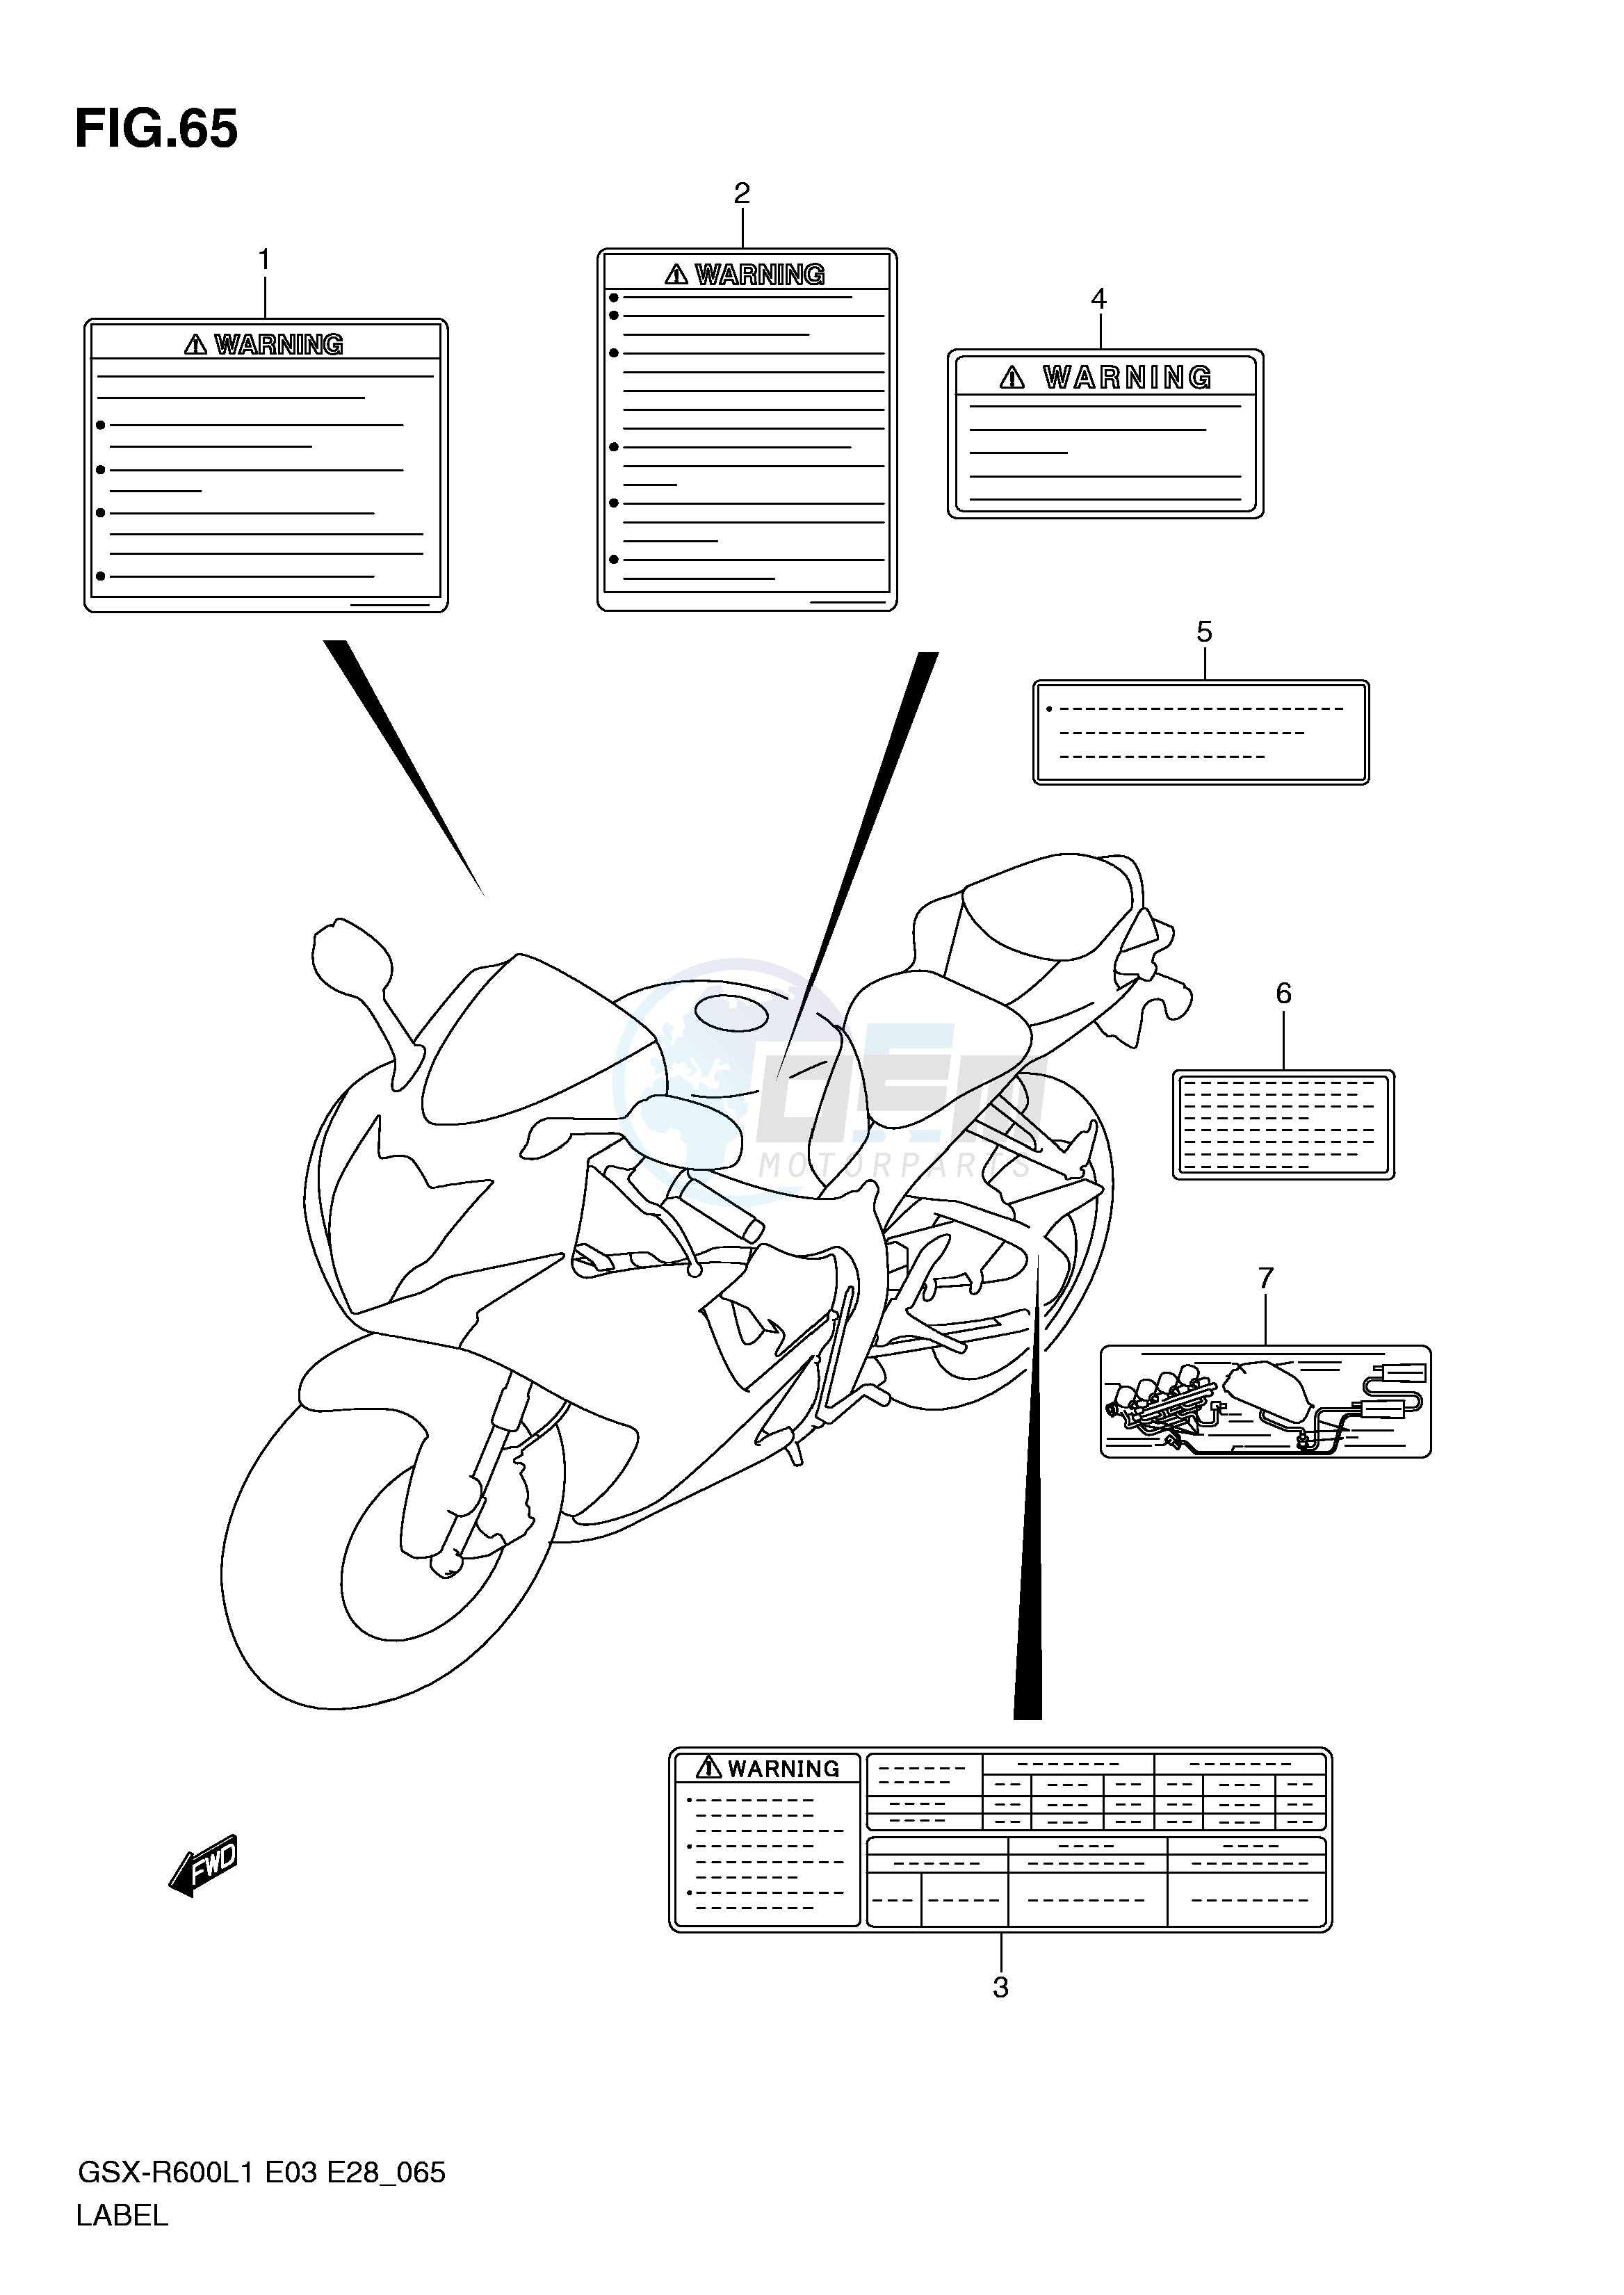 LABEL (GSX-R600L1 E33) blueprint